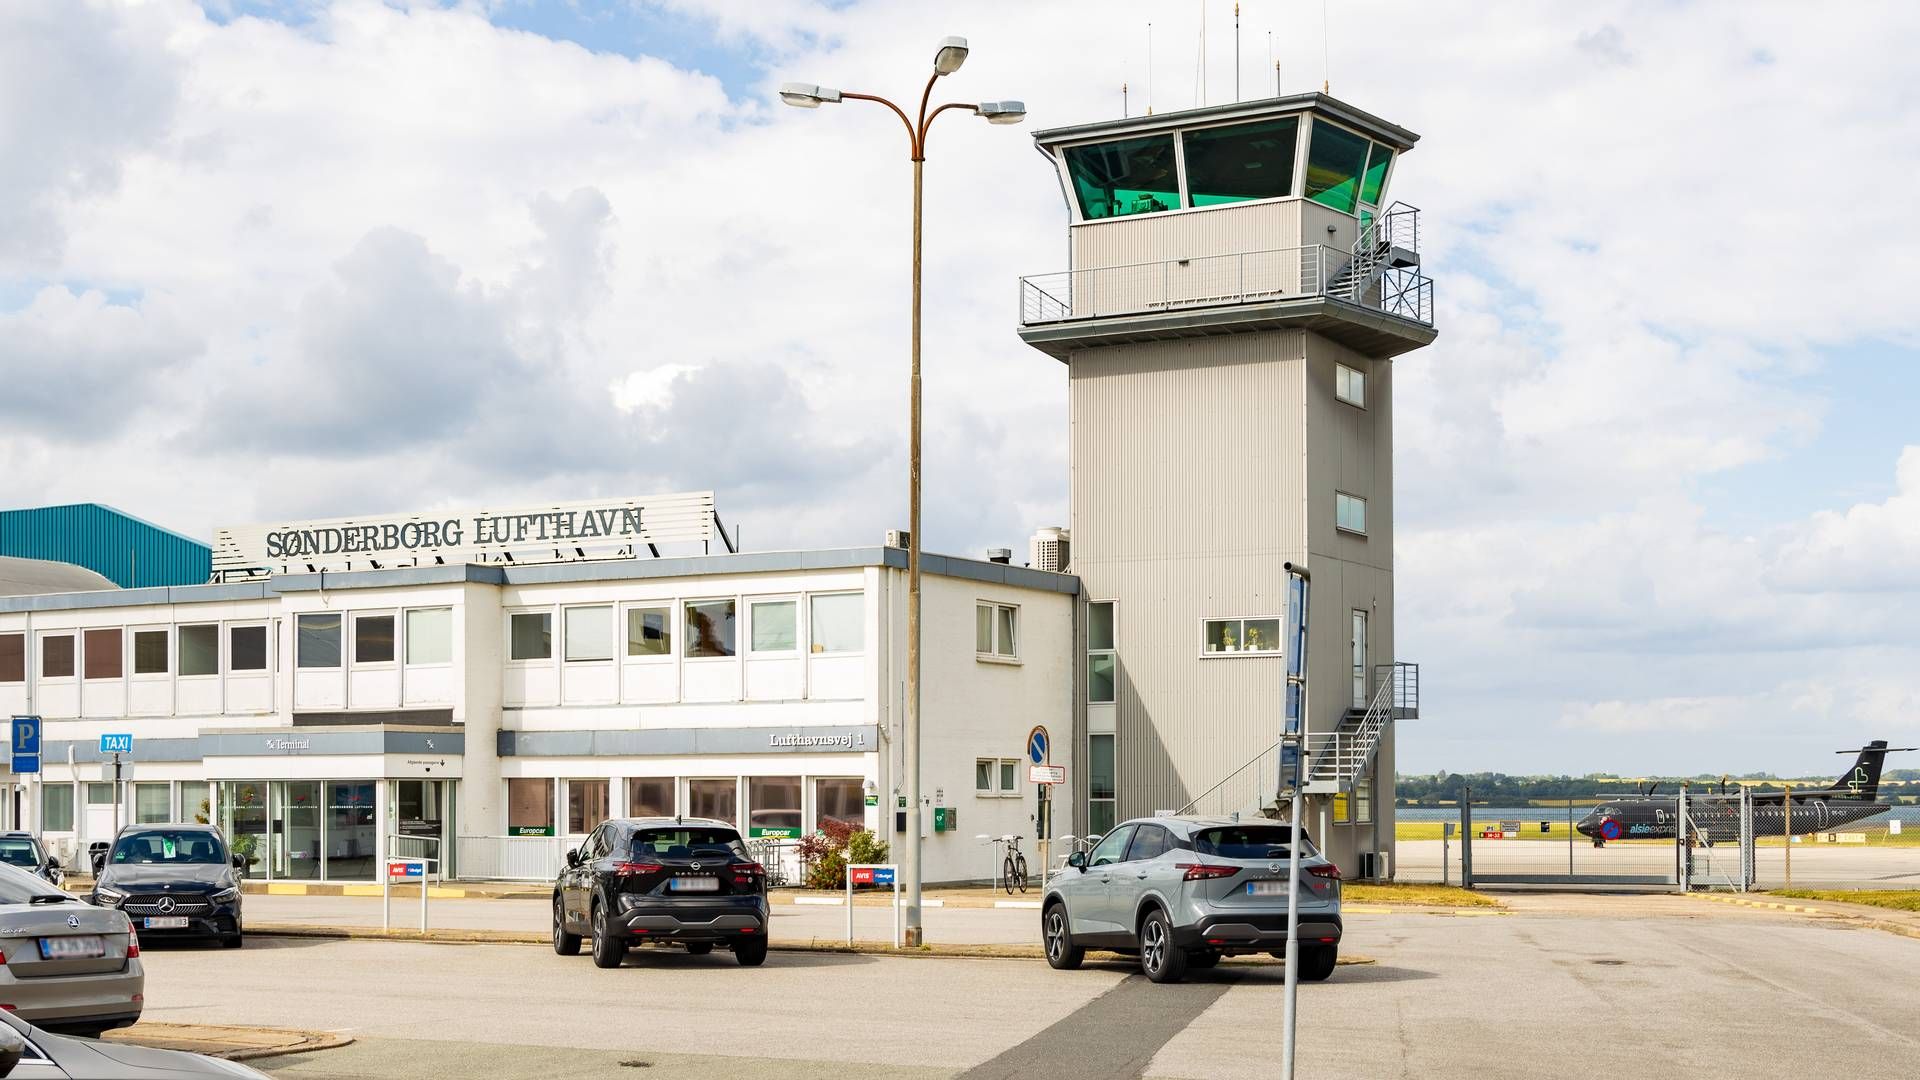 Lufthavnen skal hen over de kommende år gå igennem en omsiggribende forandring. | Foto: Pr / Kim Toft Jørgensen for Sønderborg Kommune